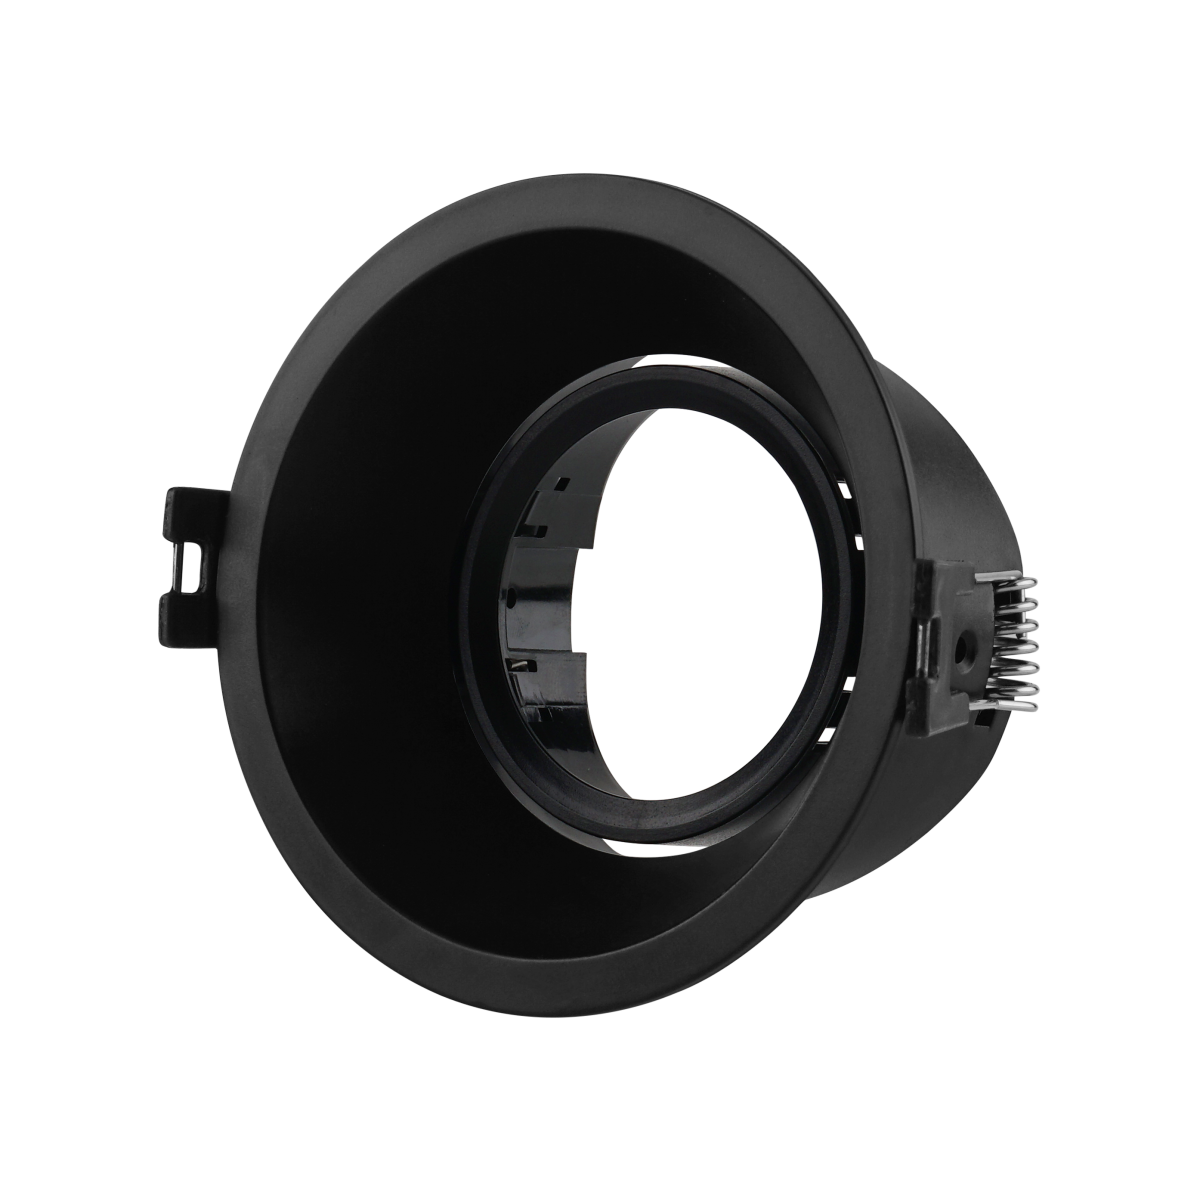 Anello circolare per lampadina GU10 / MR16 - Taglio Ø85 mm - UGR basso